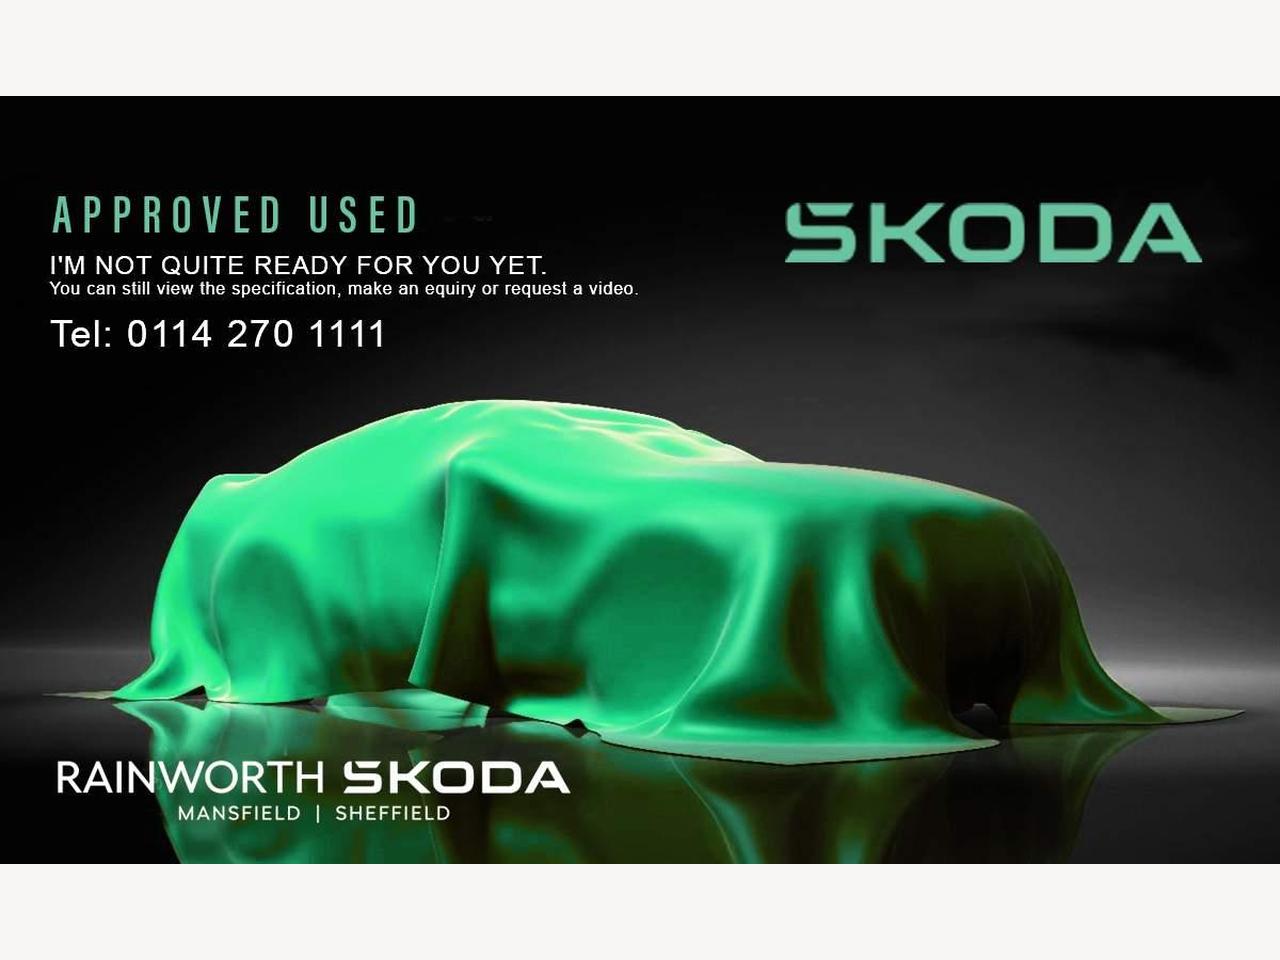 Skoda Citigo 1.0 MPI (60PS) SE Green Tech Hatchback 5-Dr